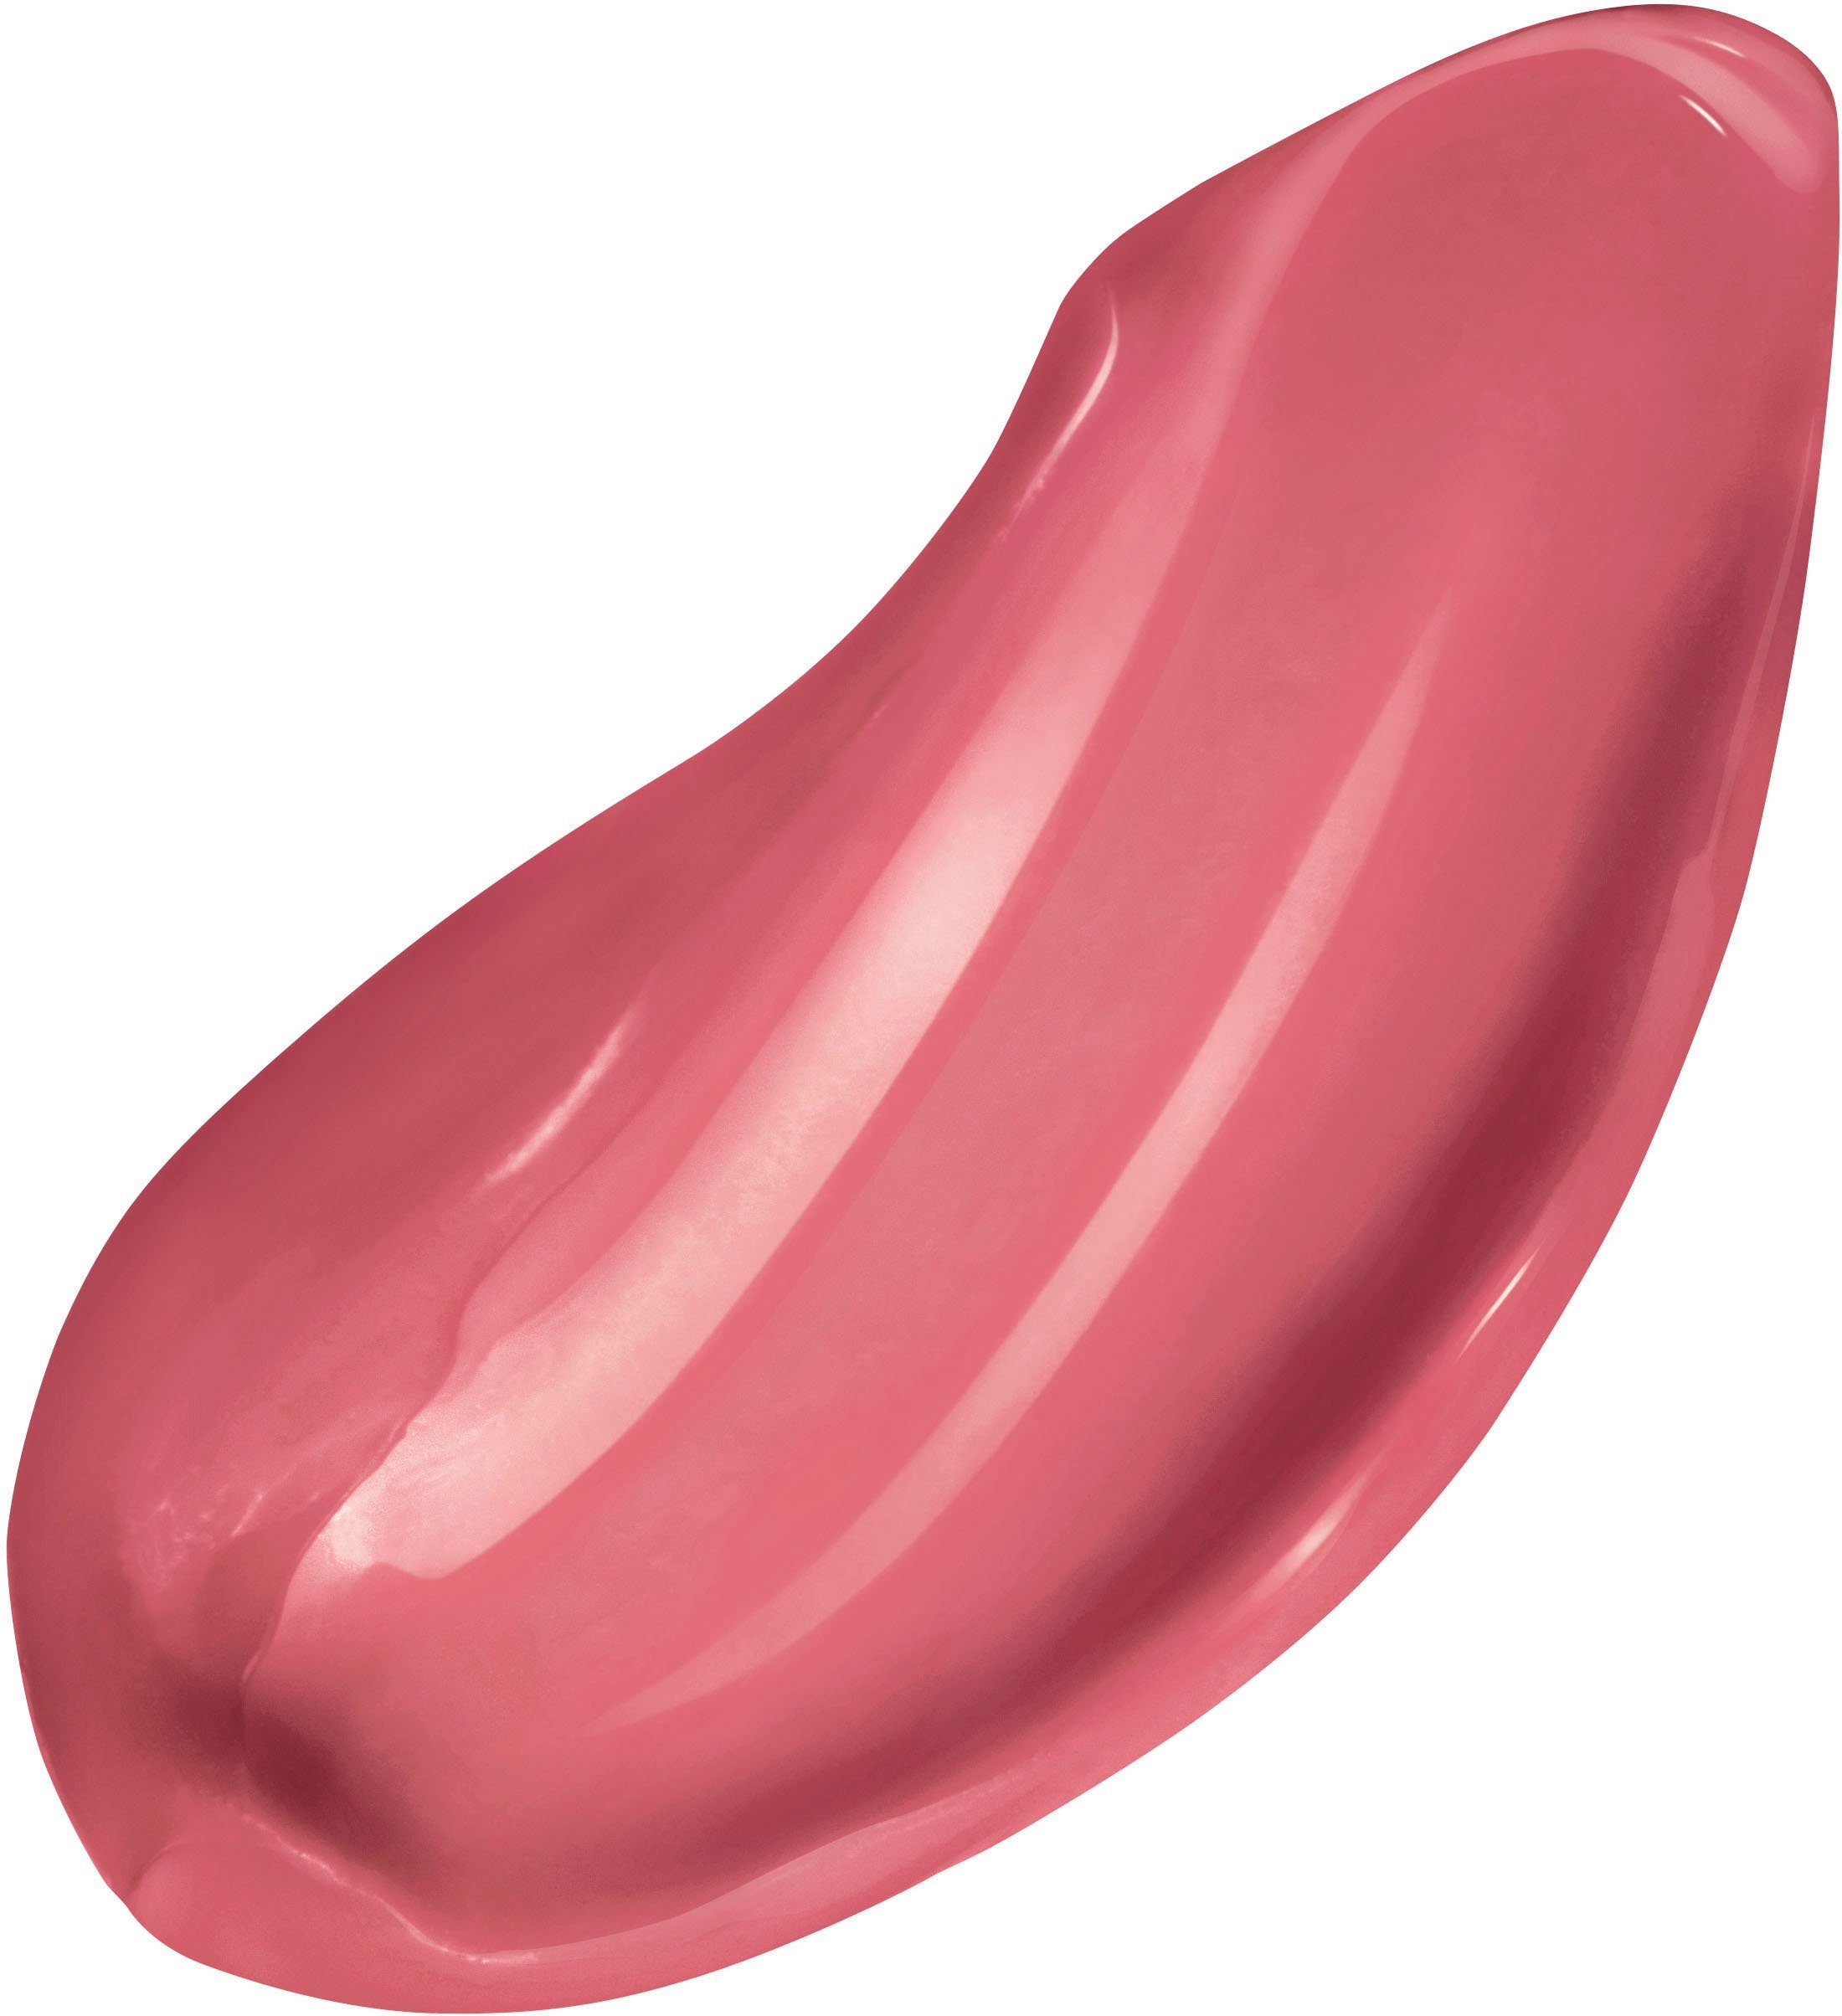 L'ORÉAL PARIS Lippenstift Age feuchtigkeitsspendendem Pflege-Kern Charming Pink 112 Dust mit Perfect